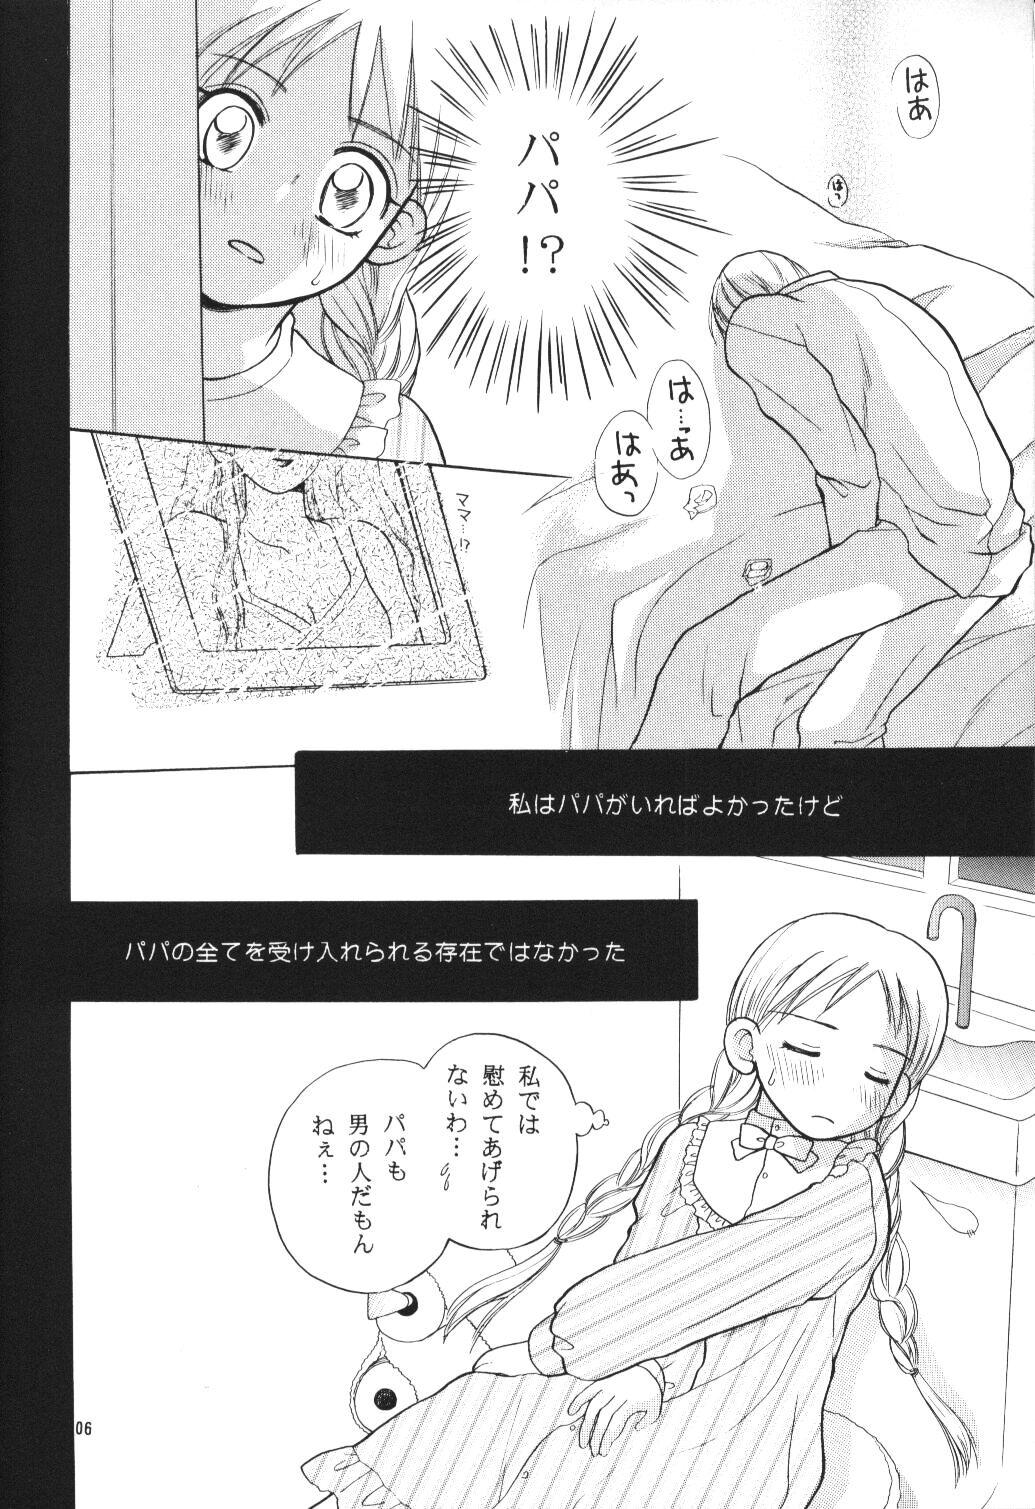 Sucking Dick Tenshi no Girigiri - Kare kano Interacial - Page 5